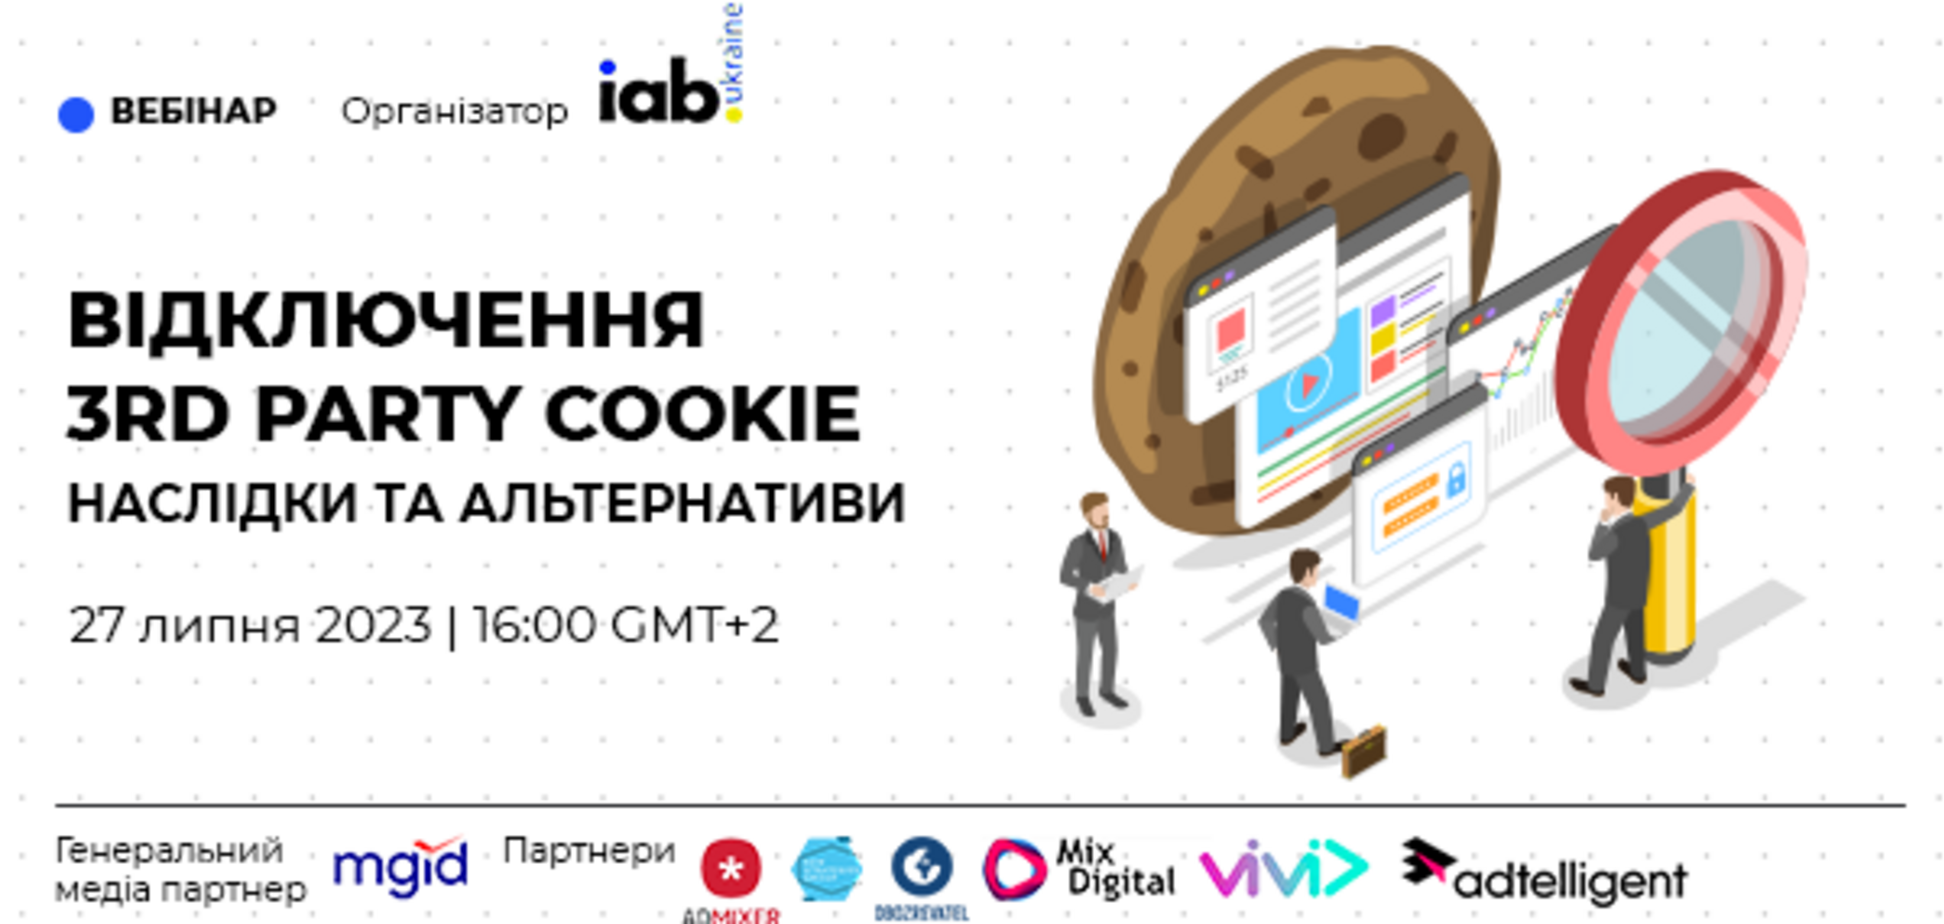 Відключення 3d party cookie: в Україні проведуть вебінар про наслідки та альтернативи